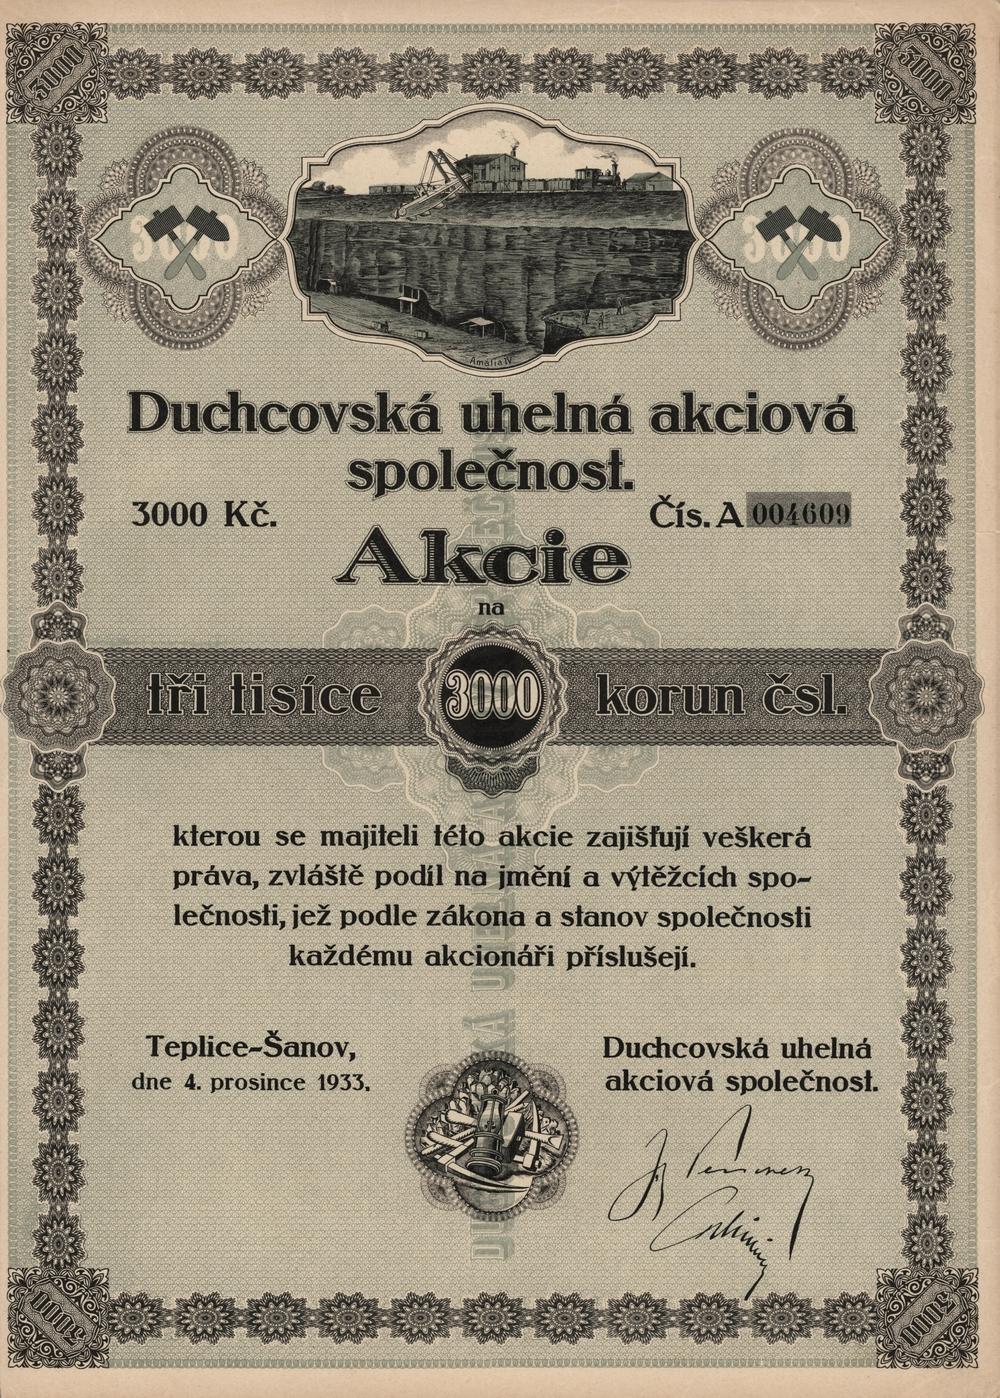 Akcie Duchcovská uhelná akciová společnost, Teplice-Šanov 1933, 3000 Kč